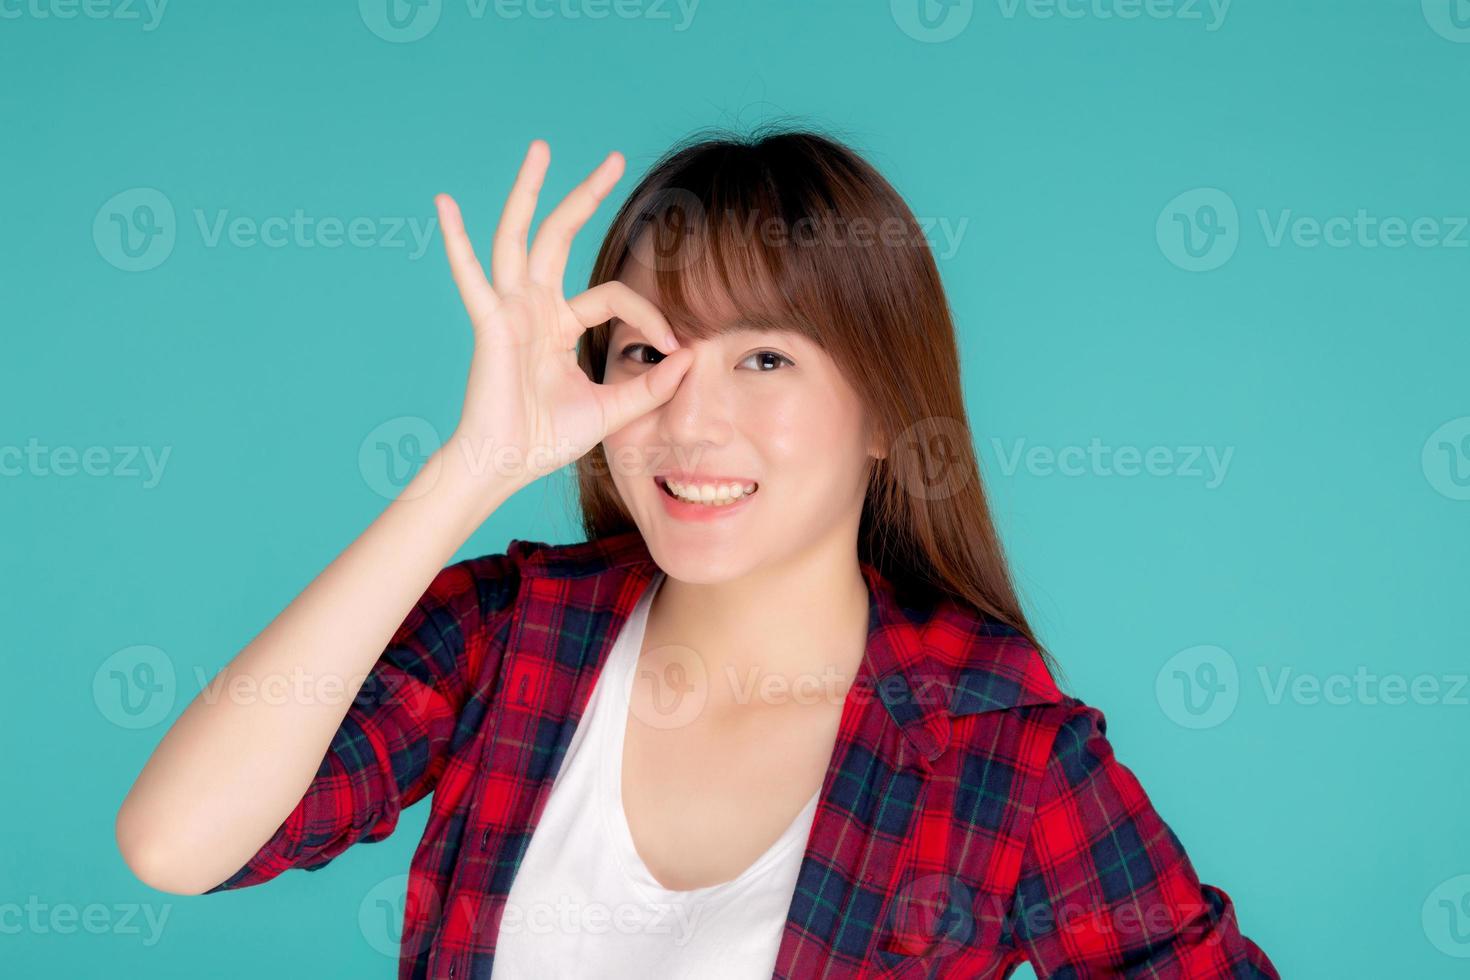 belle jeune femme asiatique heureuse porte un geste d'été de voyage signe ok avec la main sur l'œil ayant une vision isolée sur fond bleu, expression d'une adolescente asiatique avec une expression joyeuse et amusante pendant le voyage. photo